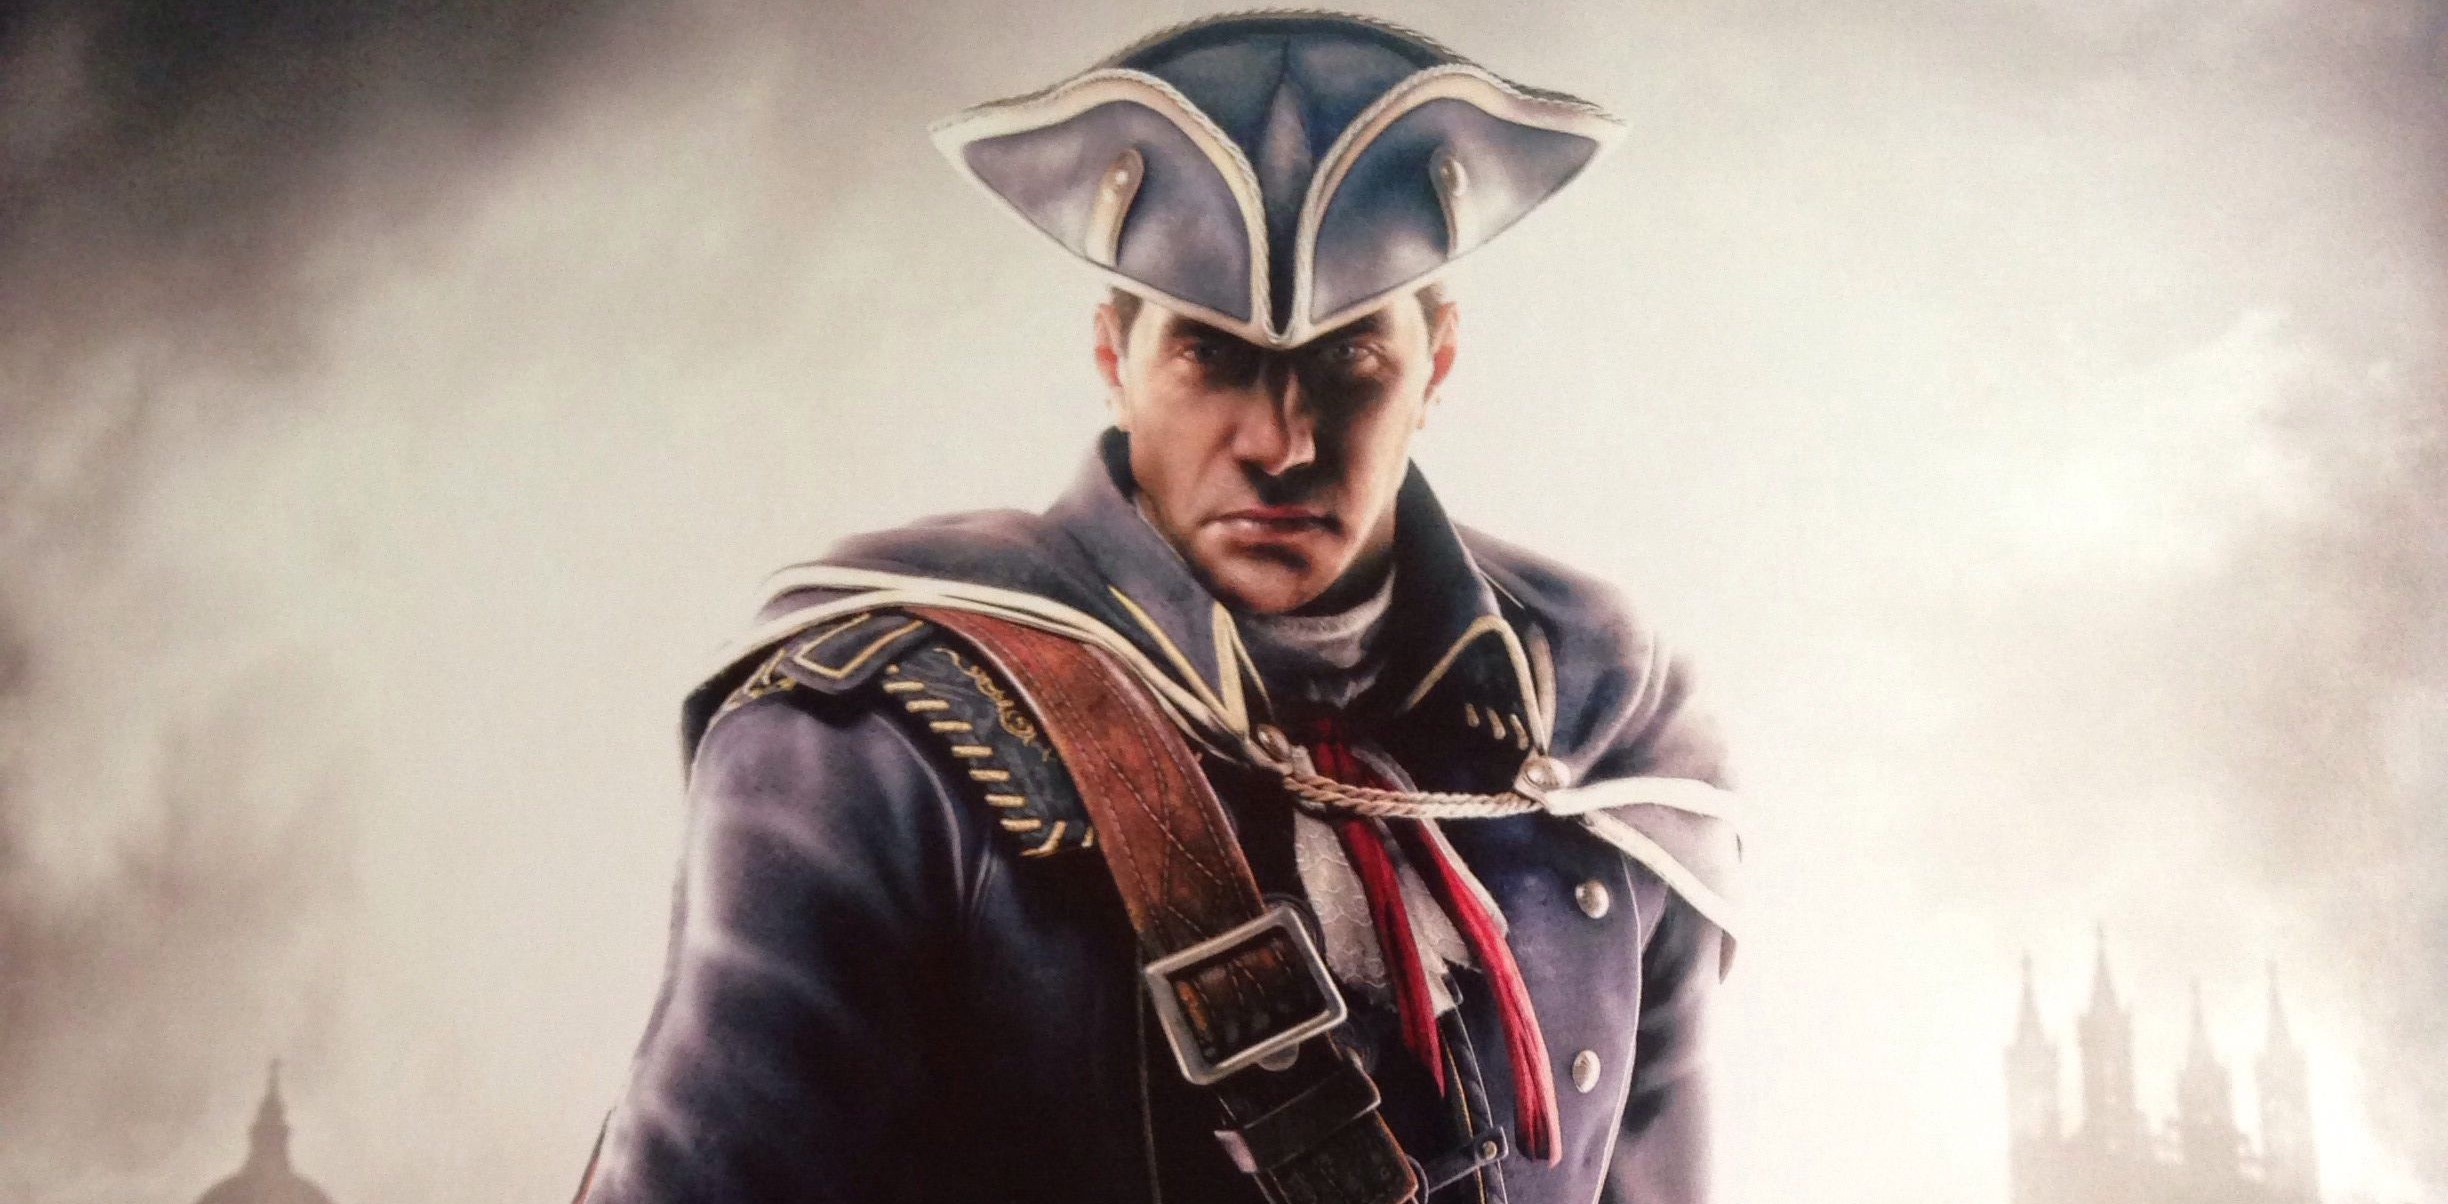 Проходим Assassin’s Creed III _Запомните этого предателя_ - история США - 2 часть